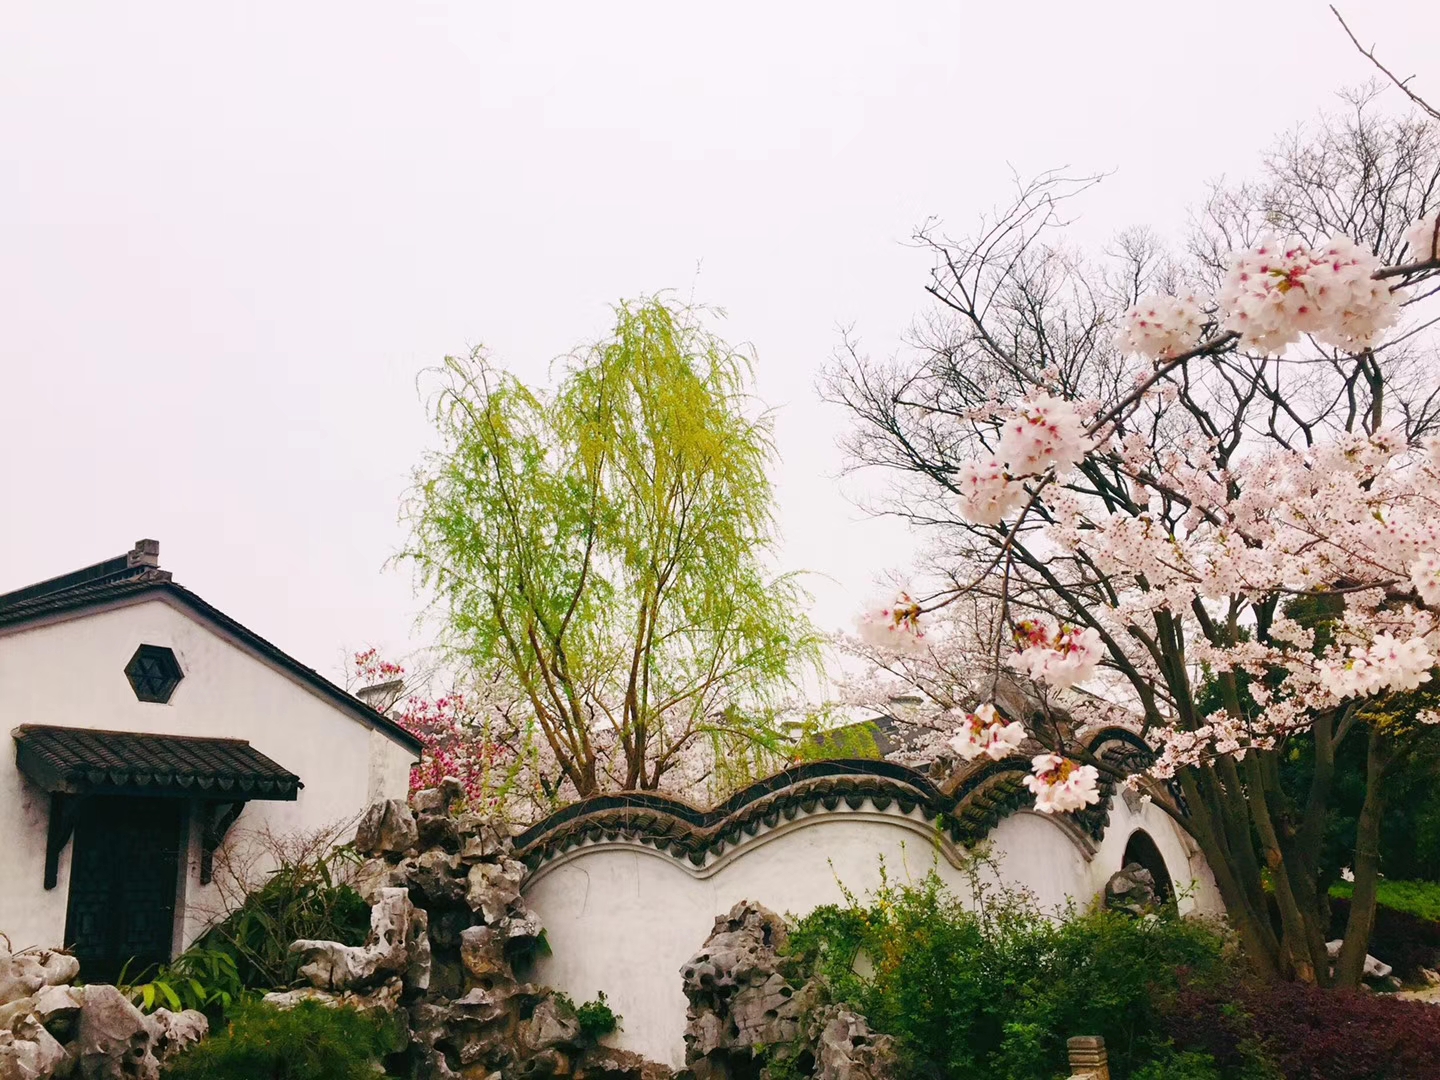 无锡最具江南风情的巡塘古镇,春天美丽的像个花园